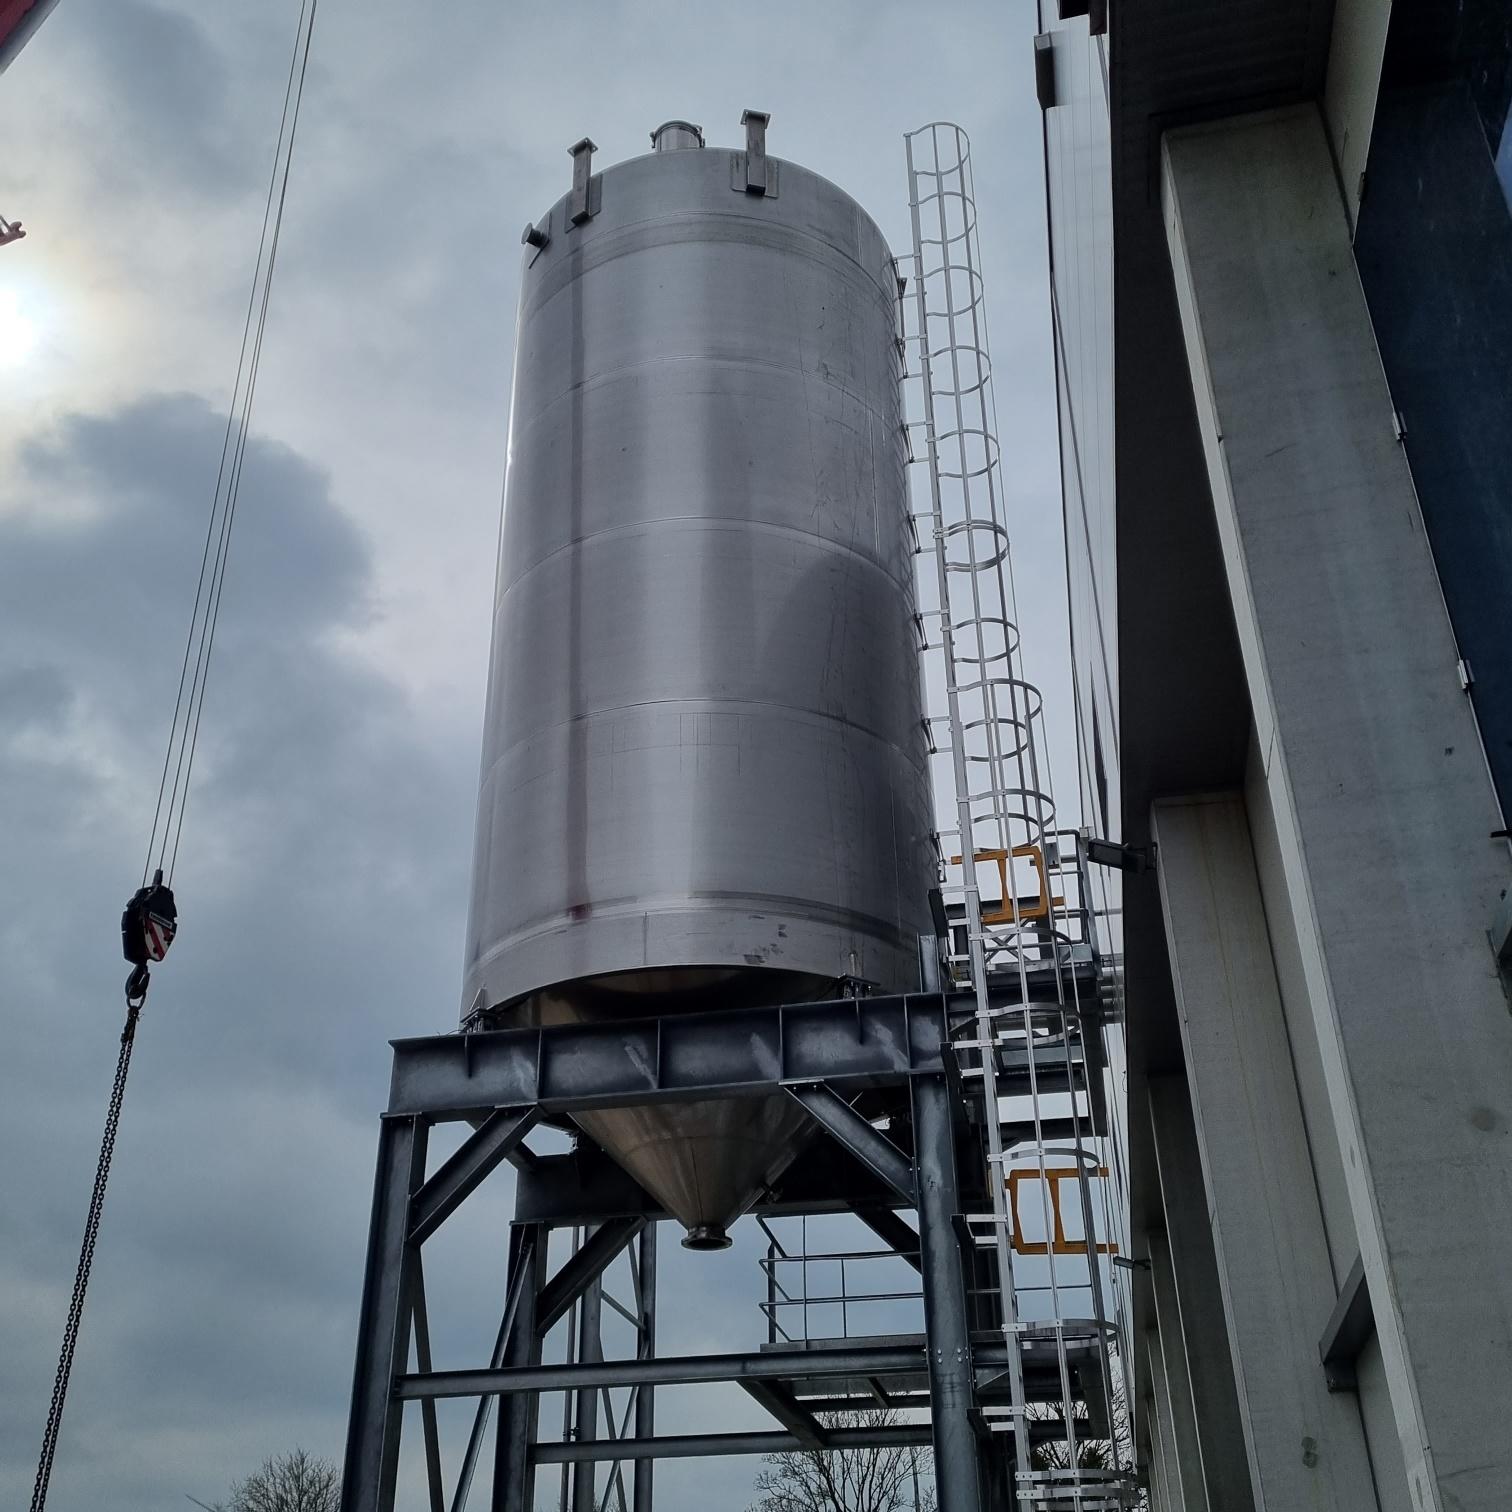 Installatie van een inox silo  200m³ voor de opslag van aardappel restproducten. De galva steunstructuur, ladders en platforms waren ook deel van het contract.